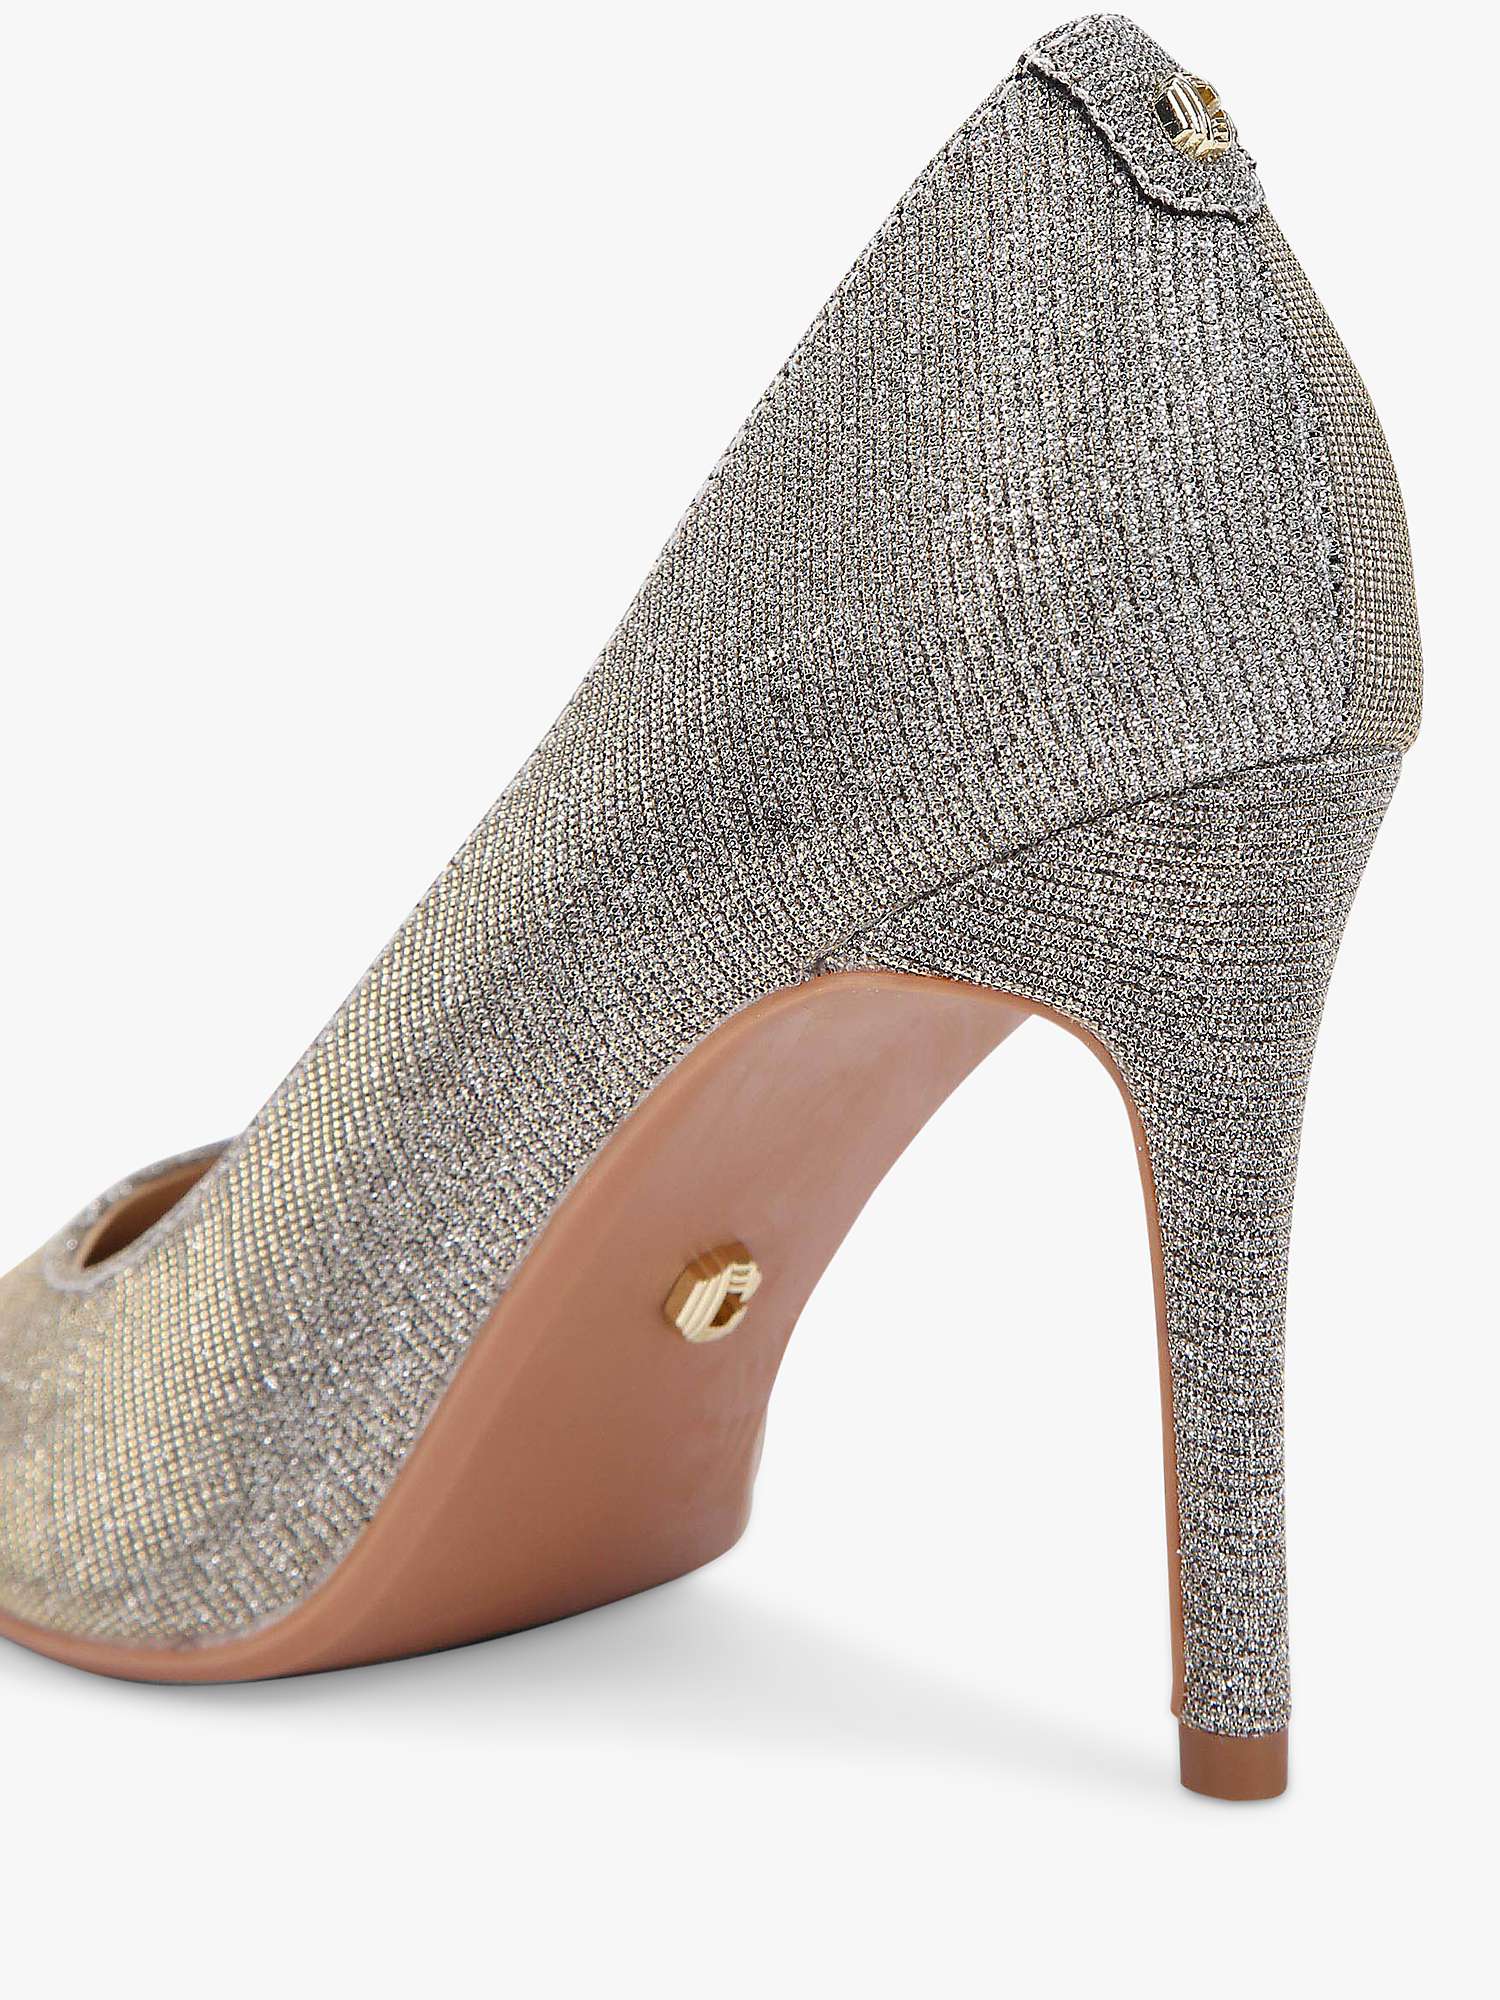 Carvela Classique Embellished High Heel Court Shoes, Silver at John ...